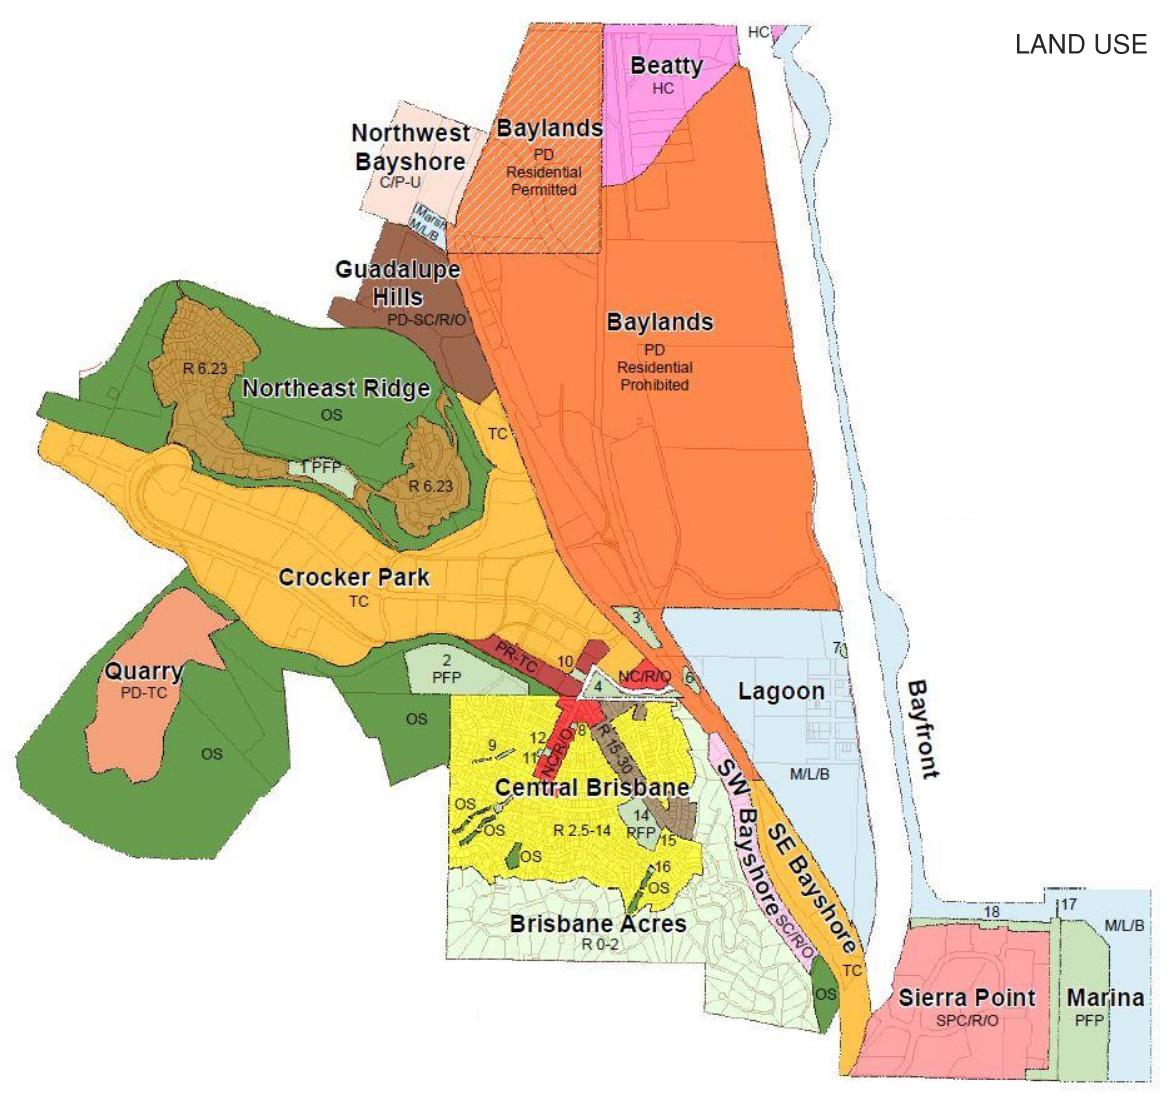 General Plan Land Use Map Image